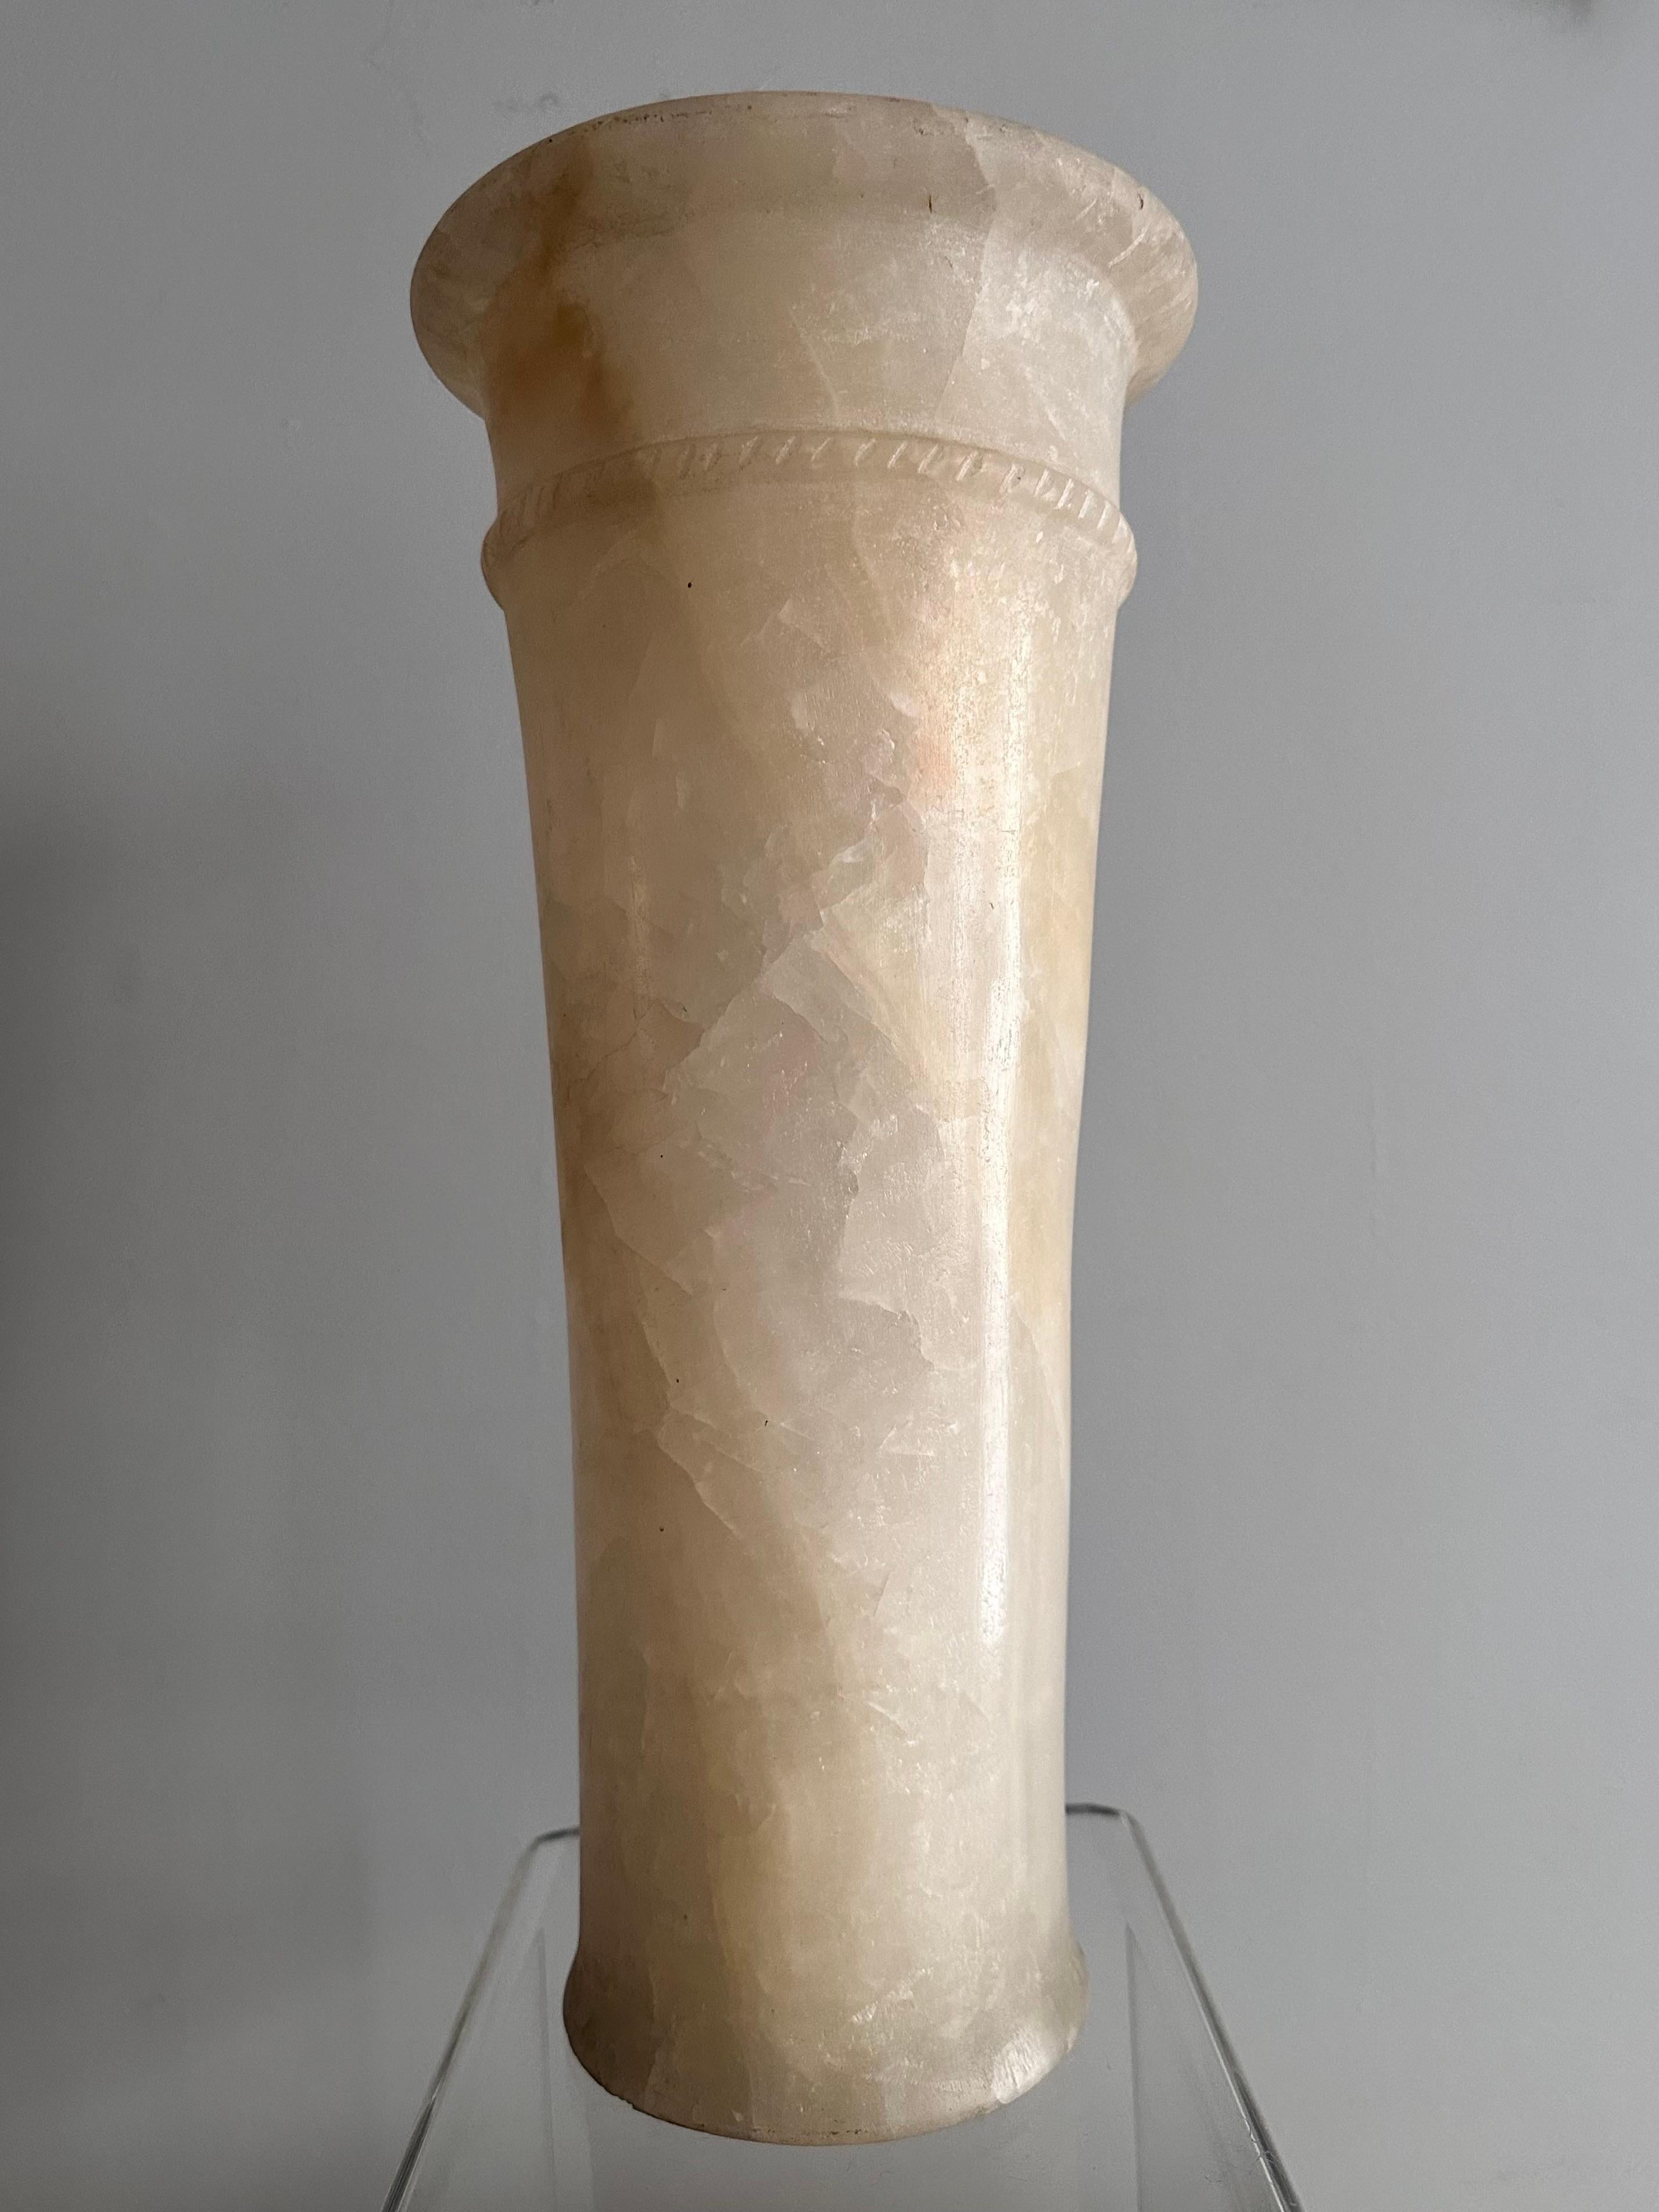 Vase cylindrique en albâtre de style égyptien, 20e siècle.
Une base plane et un léger évasement  accentuée par un anneau segmenté en relief, à motif de corde, le tout sous un épais rebord annulaire.  
Hauteur 36,5 cm
